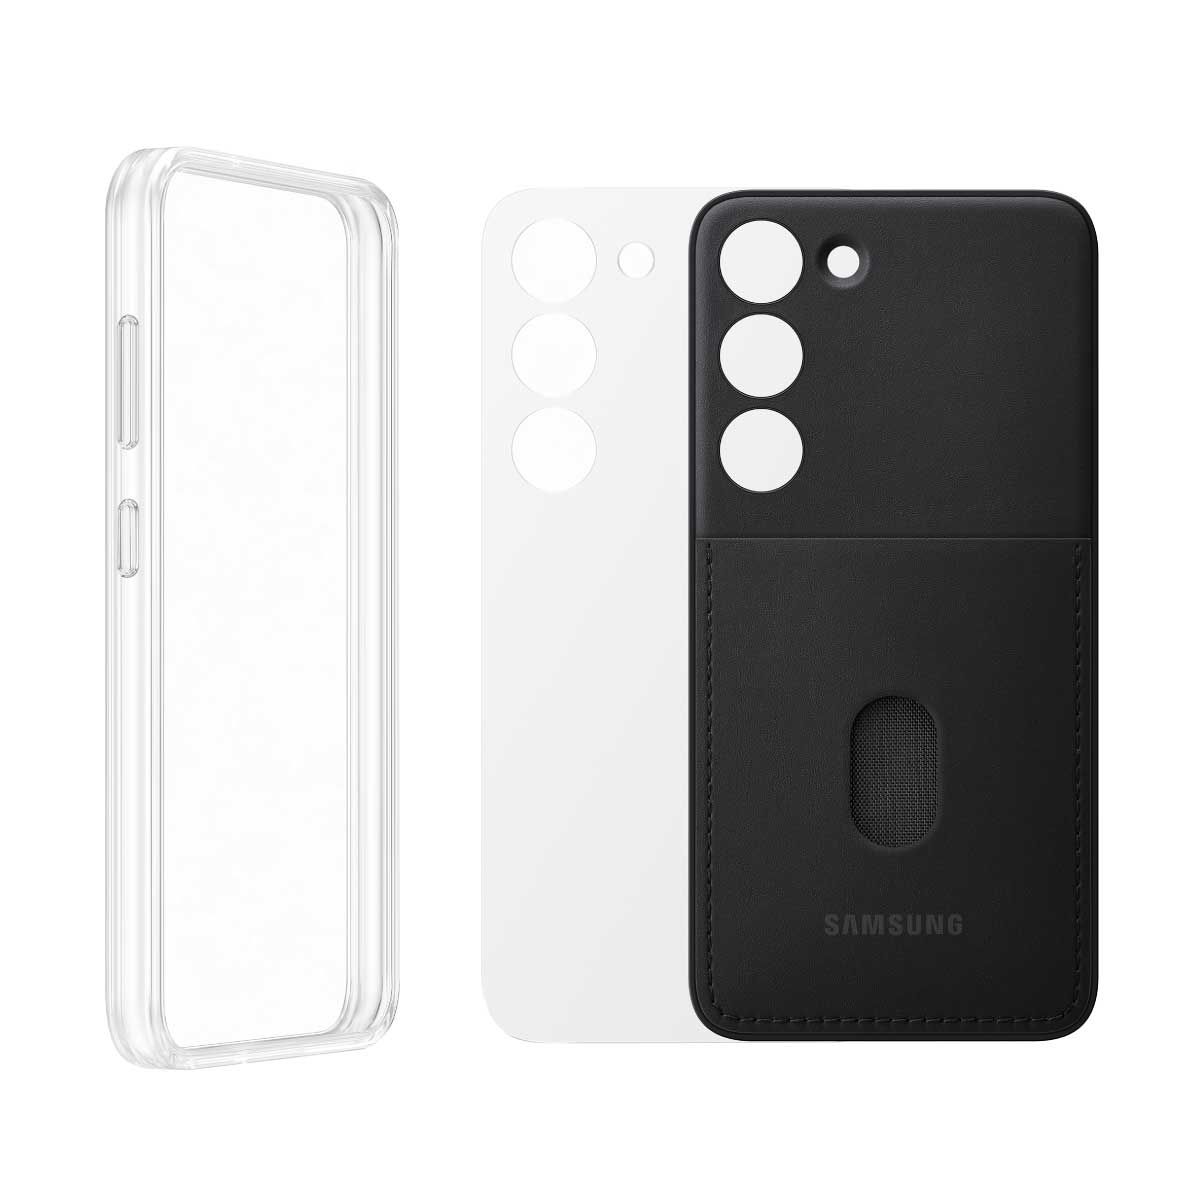 Case Samsung  Frame Case S23/BLACK รุ่นEF-MS911CBEGWW